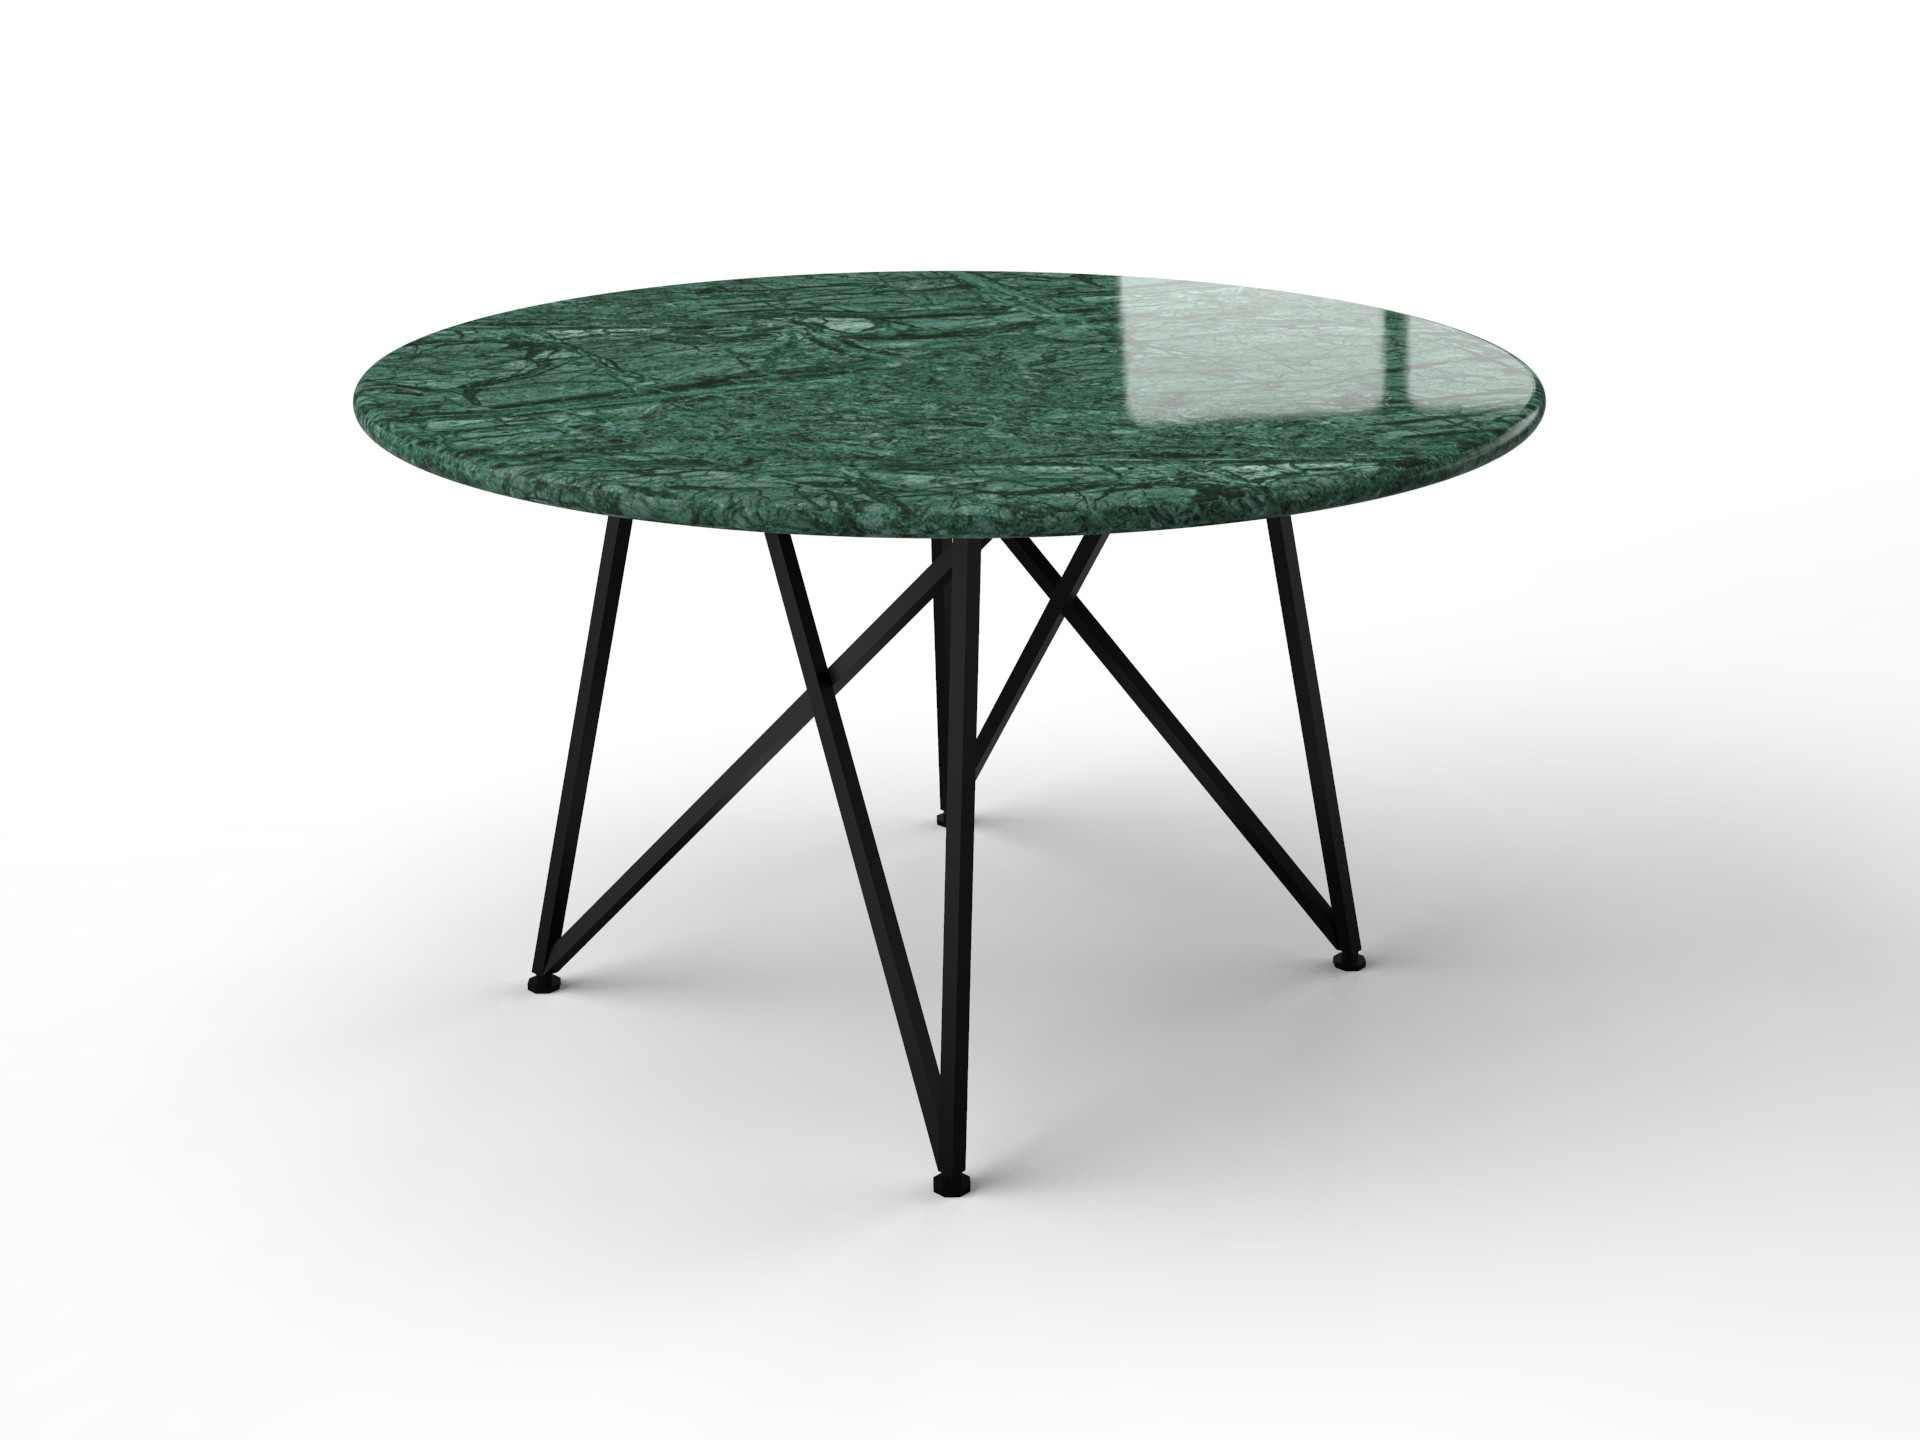 Opheldering niet verwant briefpapier Groene marmeren tafel met scandanavisch design onderstel - Eettafels